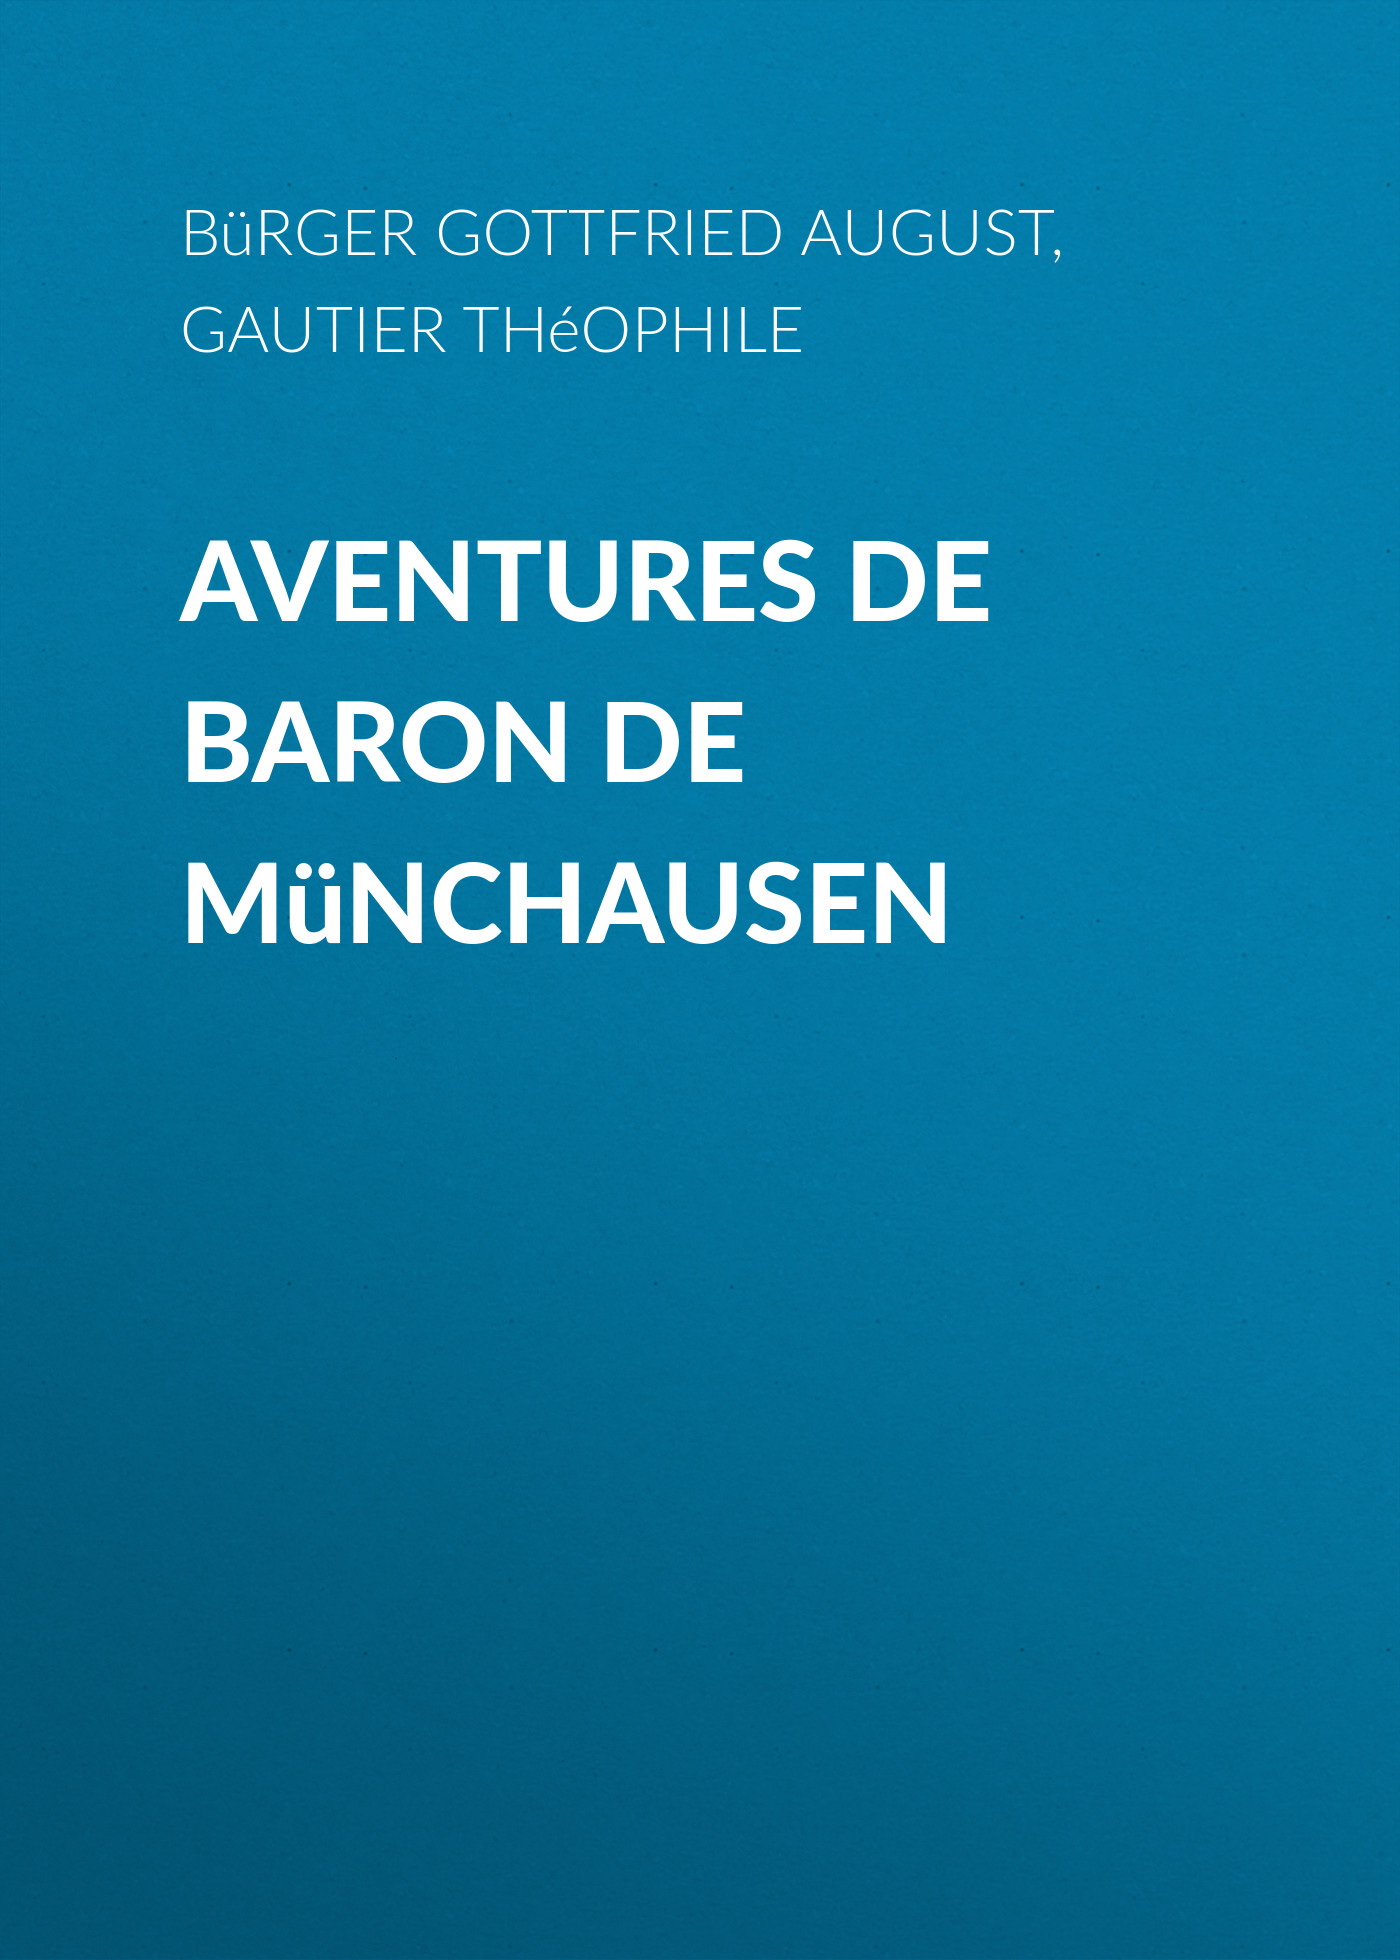 Книга Aventures de Baron de Münchausen из серии , созданная Théophile Gautier, Gottfried Bürger, может относится к жанру Зарубежная старинная литература, Зарубежная классика. Стоимость электронной книги Aventures de Baron de Münchausen с идентификатором 24180532 составляет 0 руб.